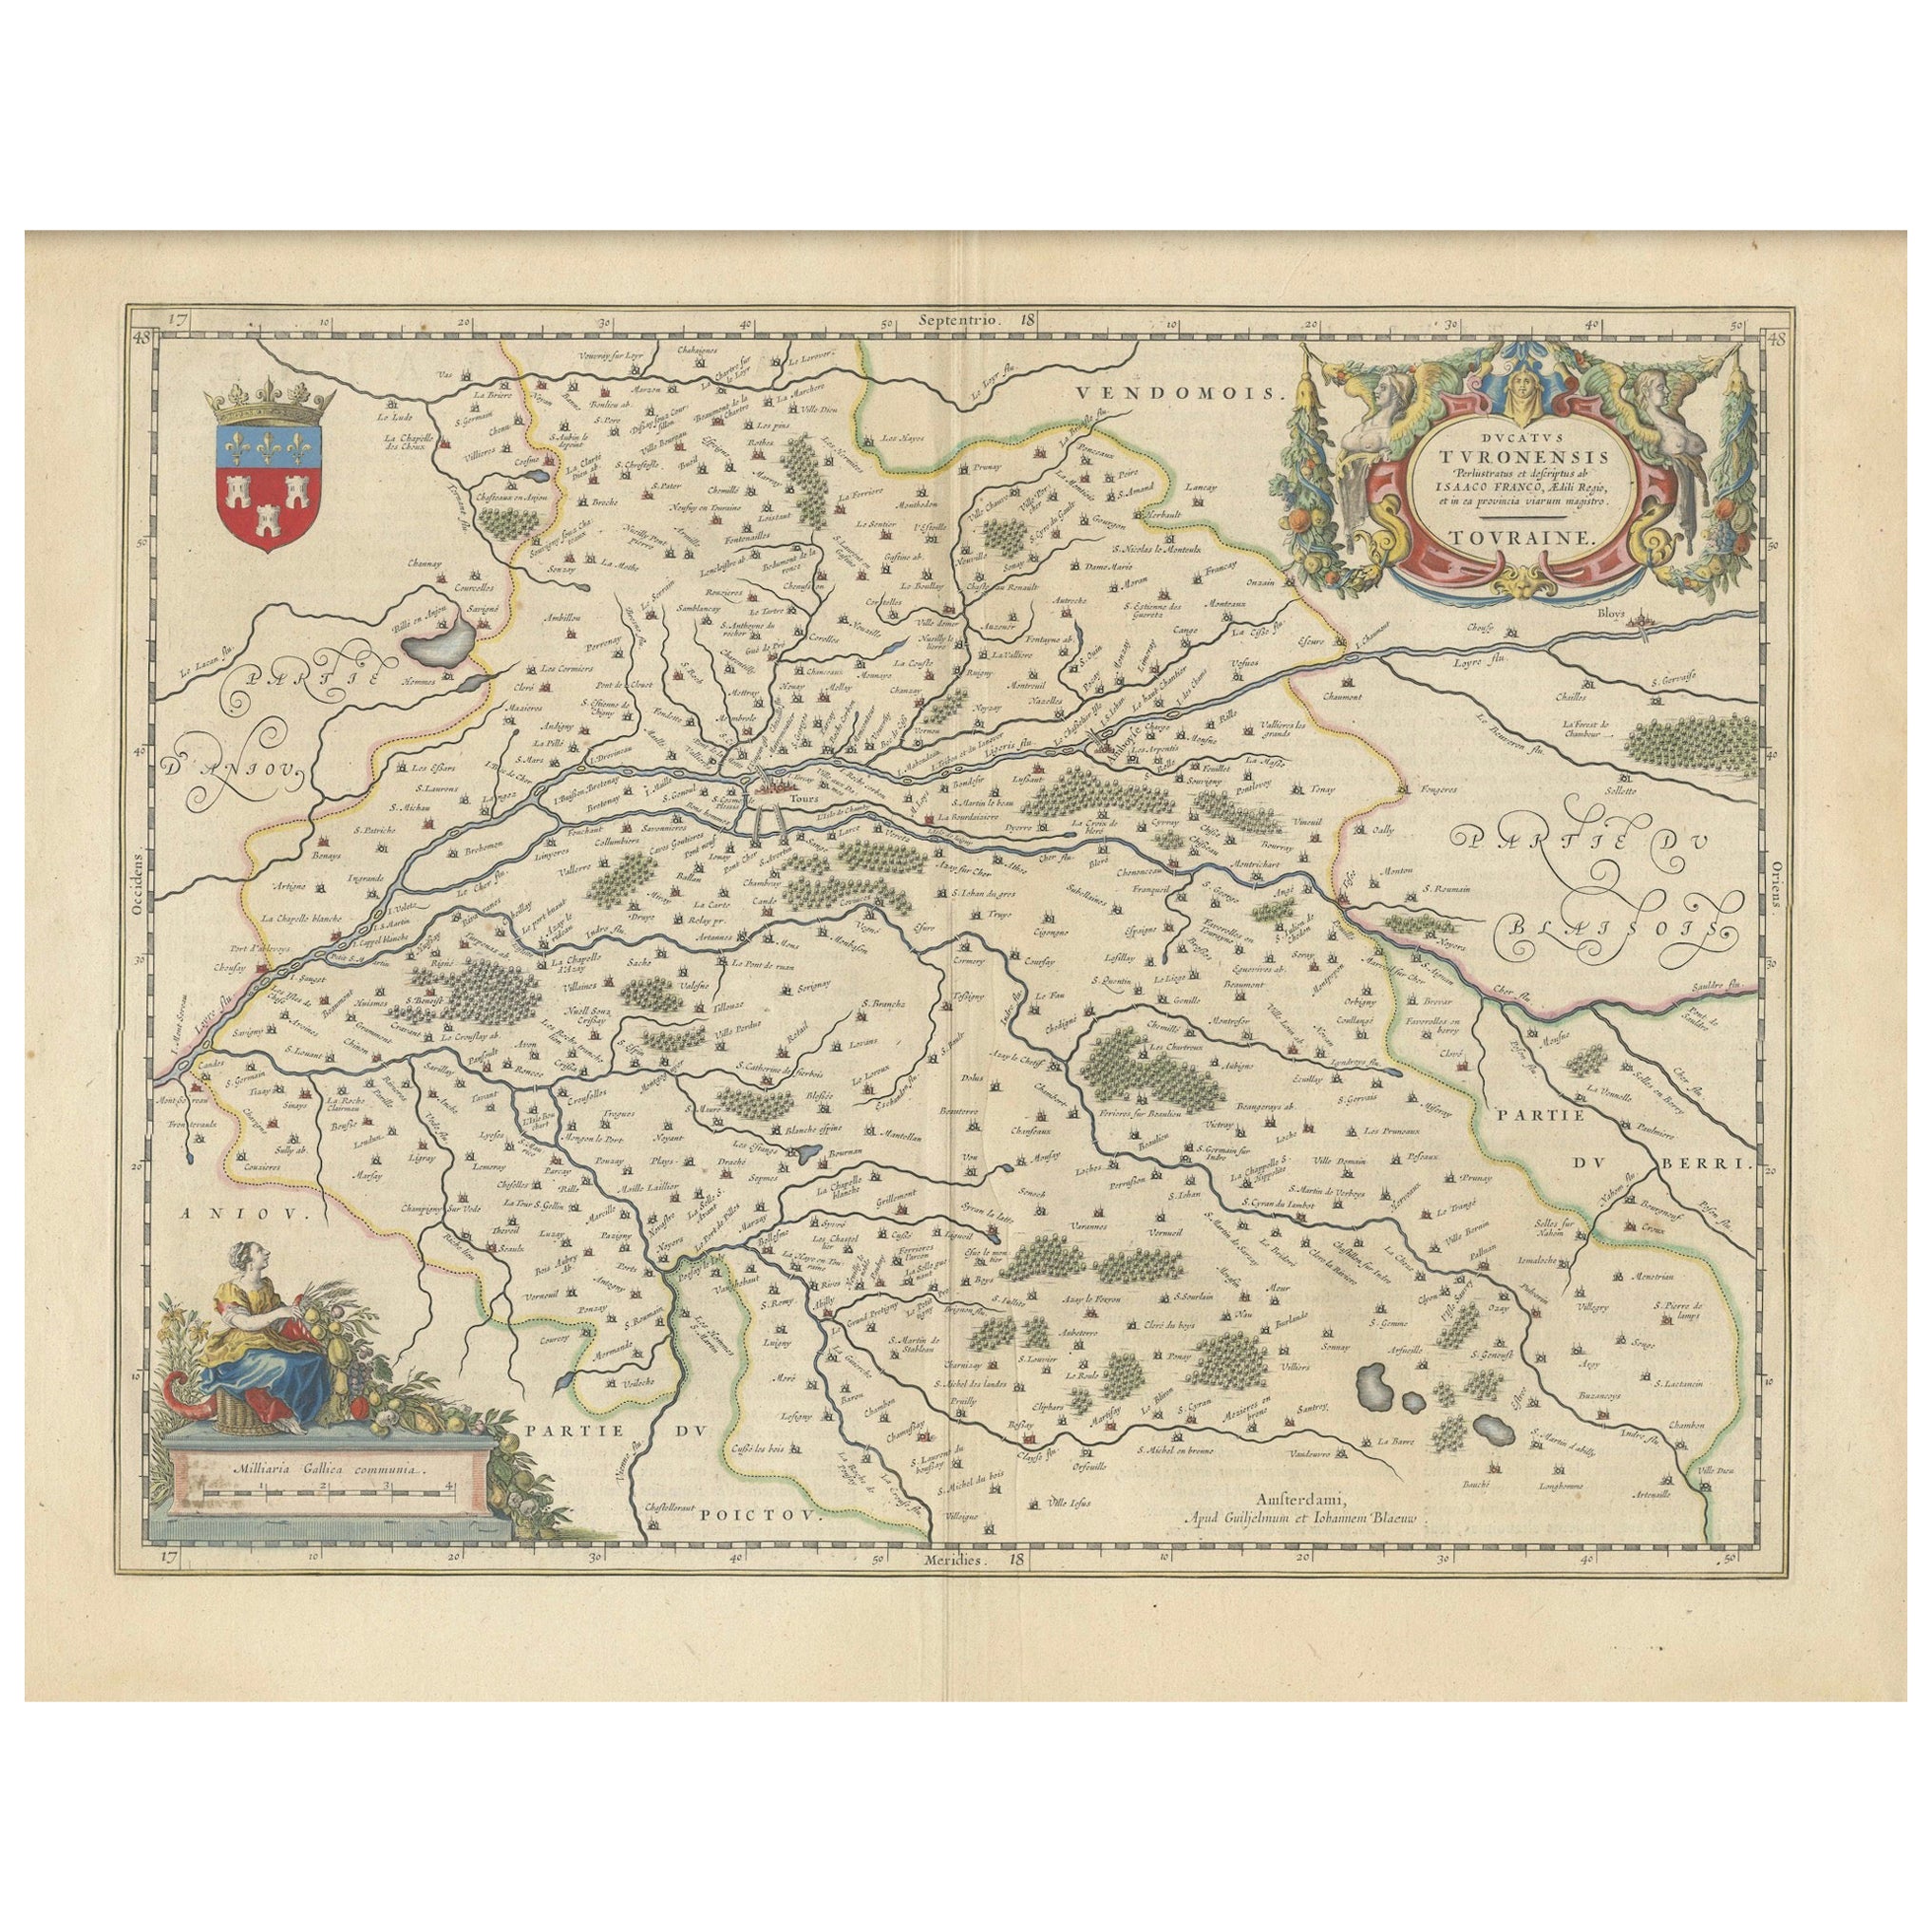 Kartographische Eleganz der Touraine: Eine Karte aus dem 17. Jahrhundert über das französische Erbe